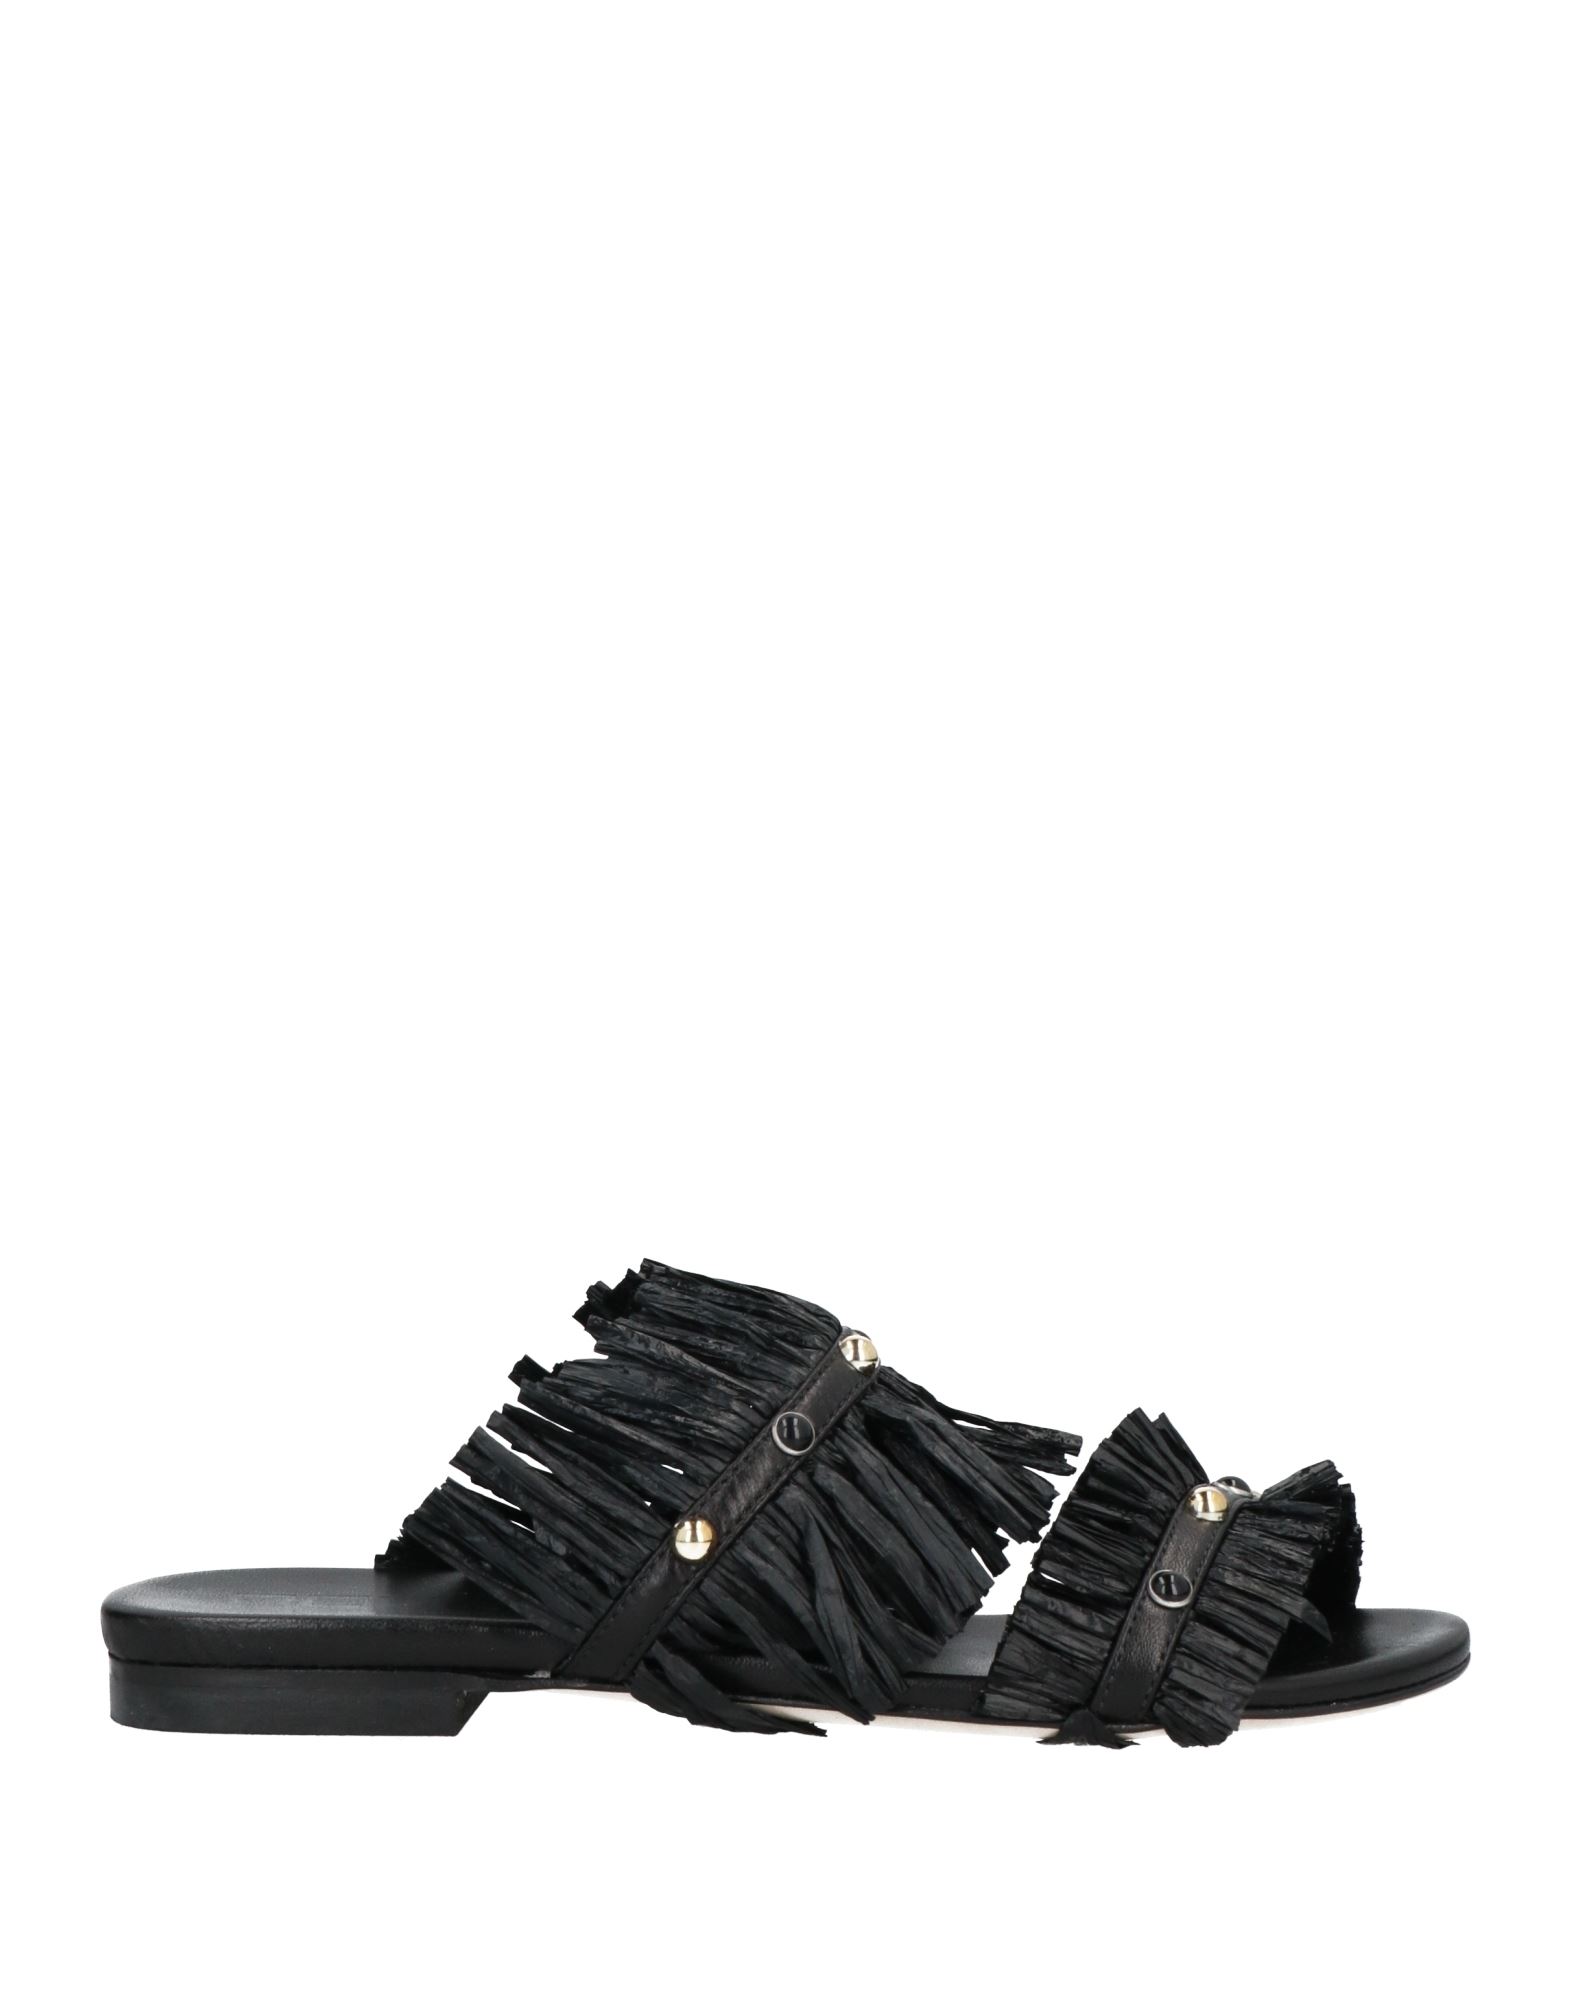 Ncub Sandals In Black